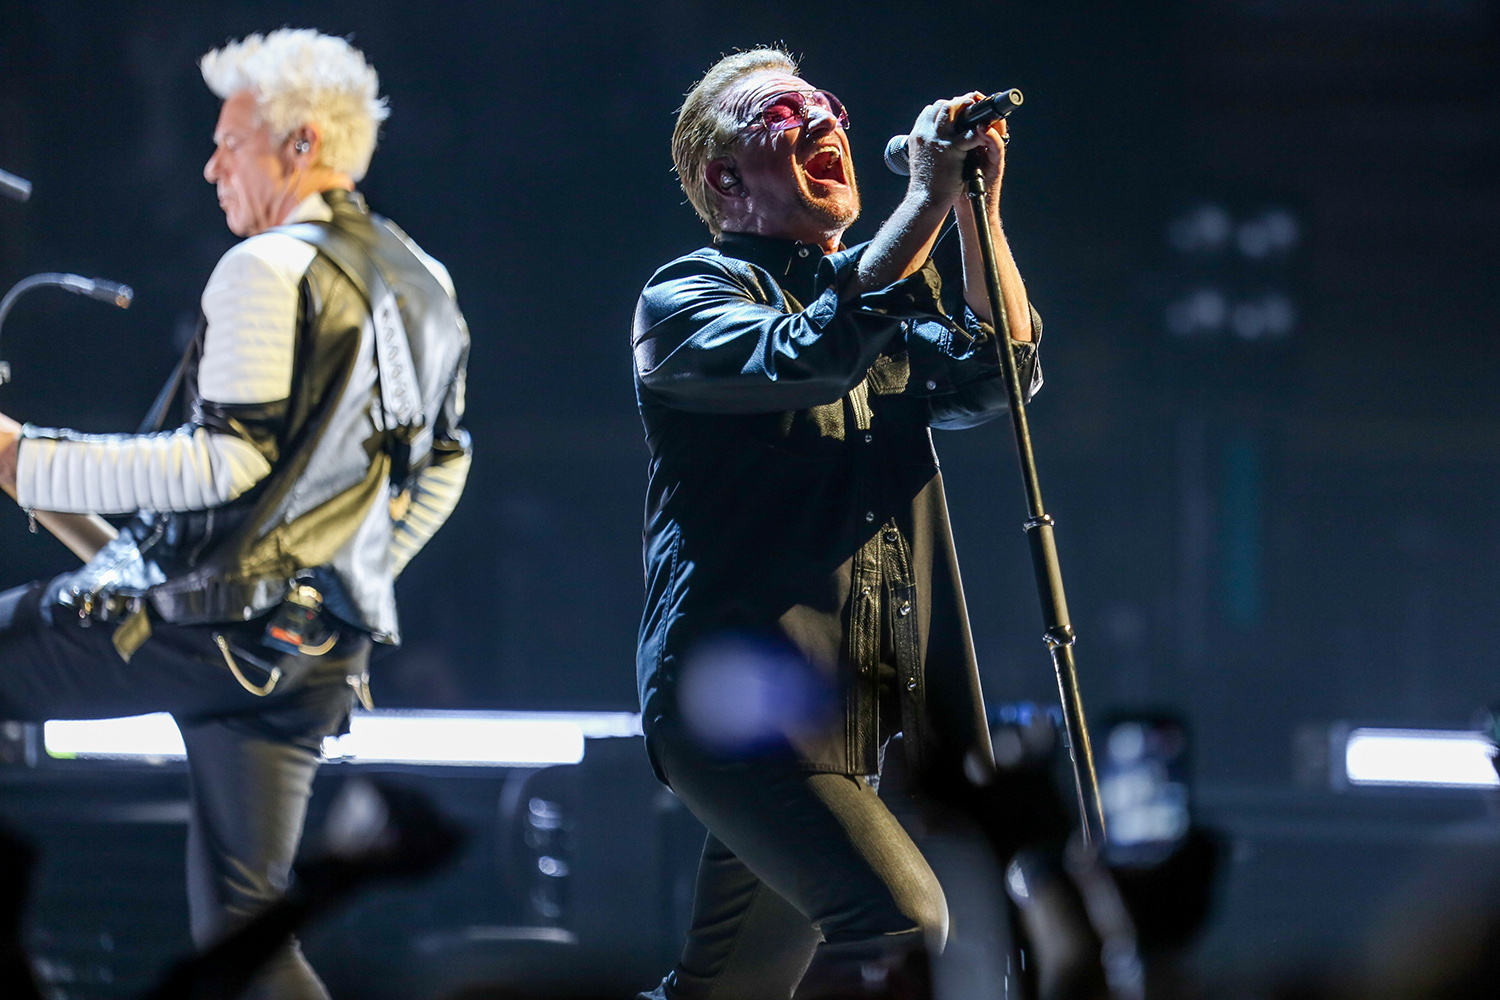 Fallece en un hotel el mánager de las giras de U2